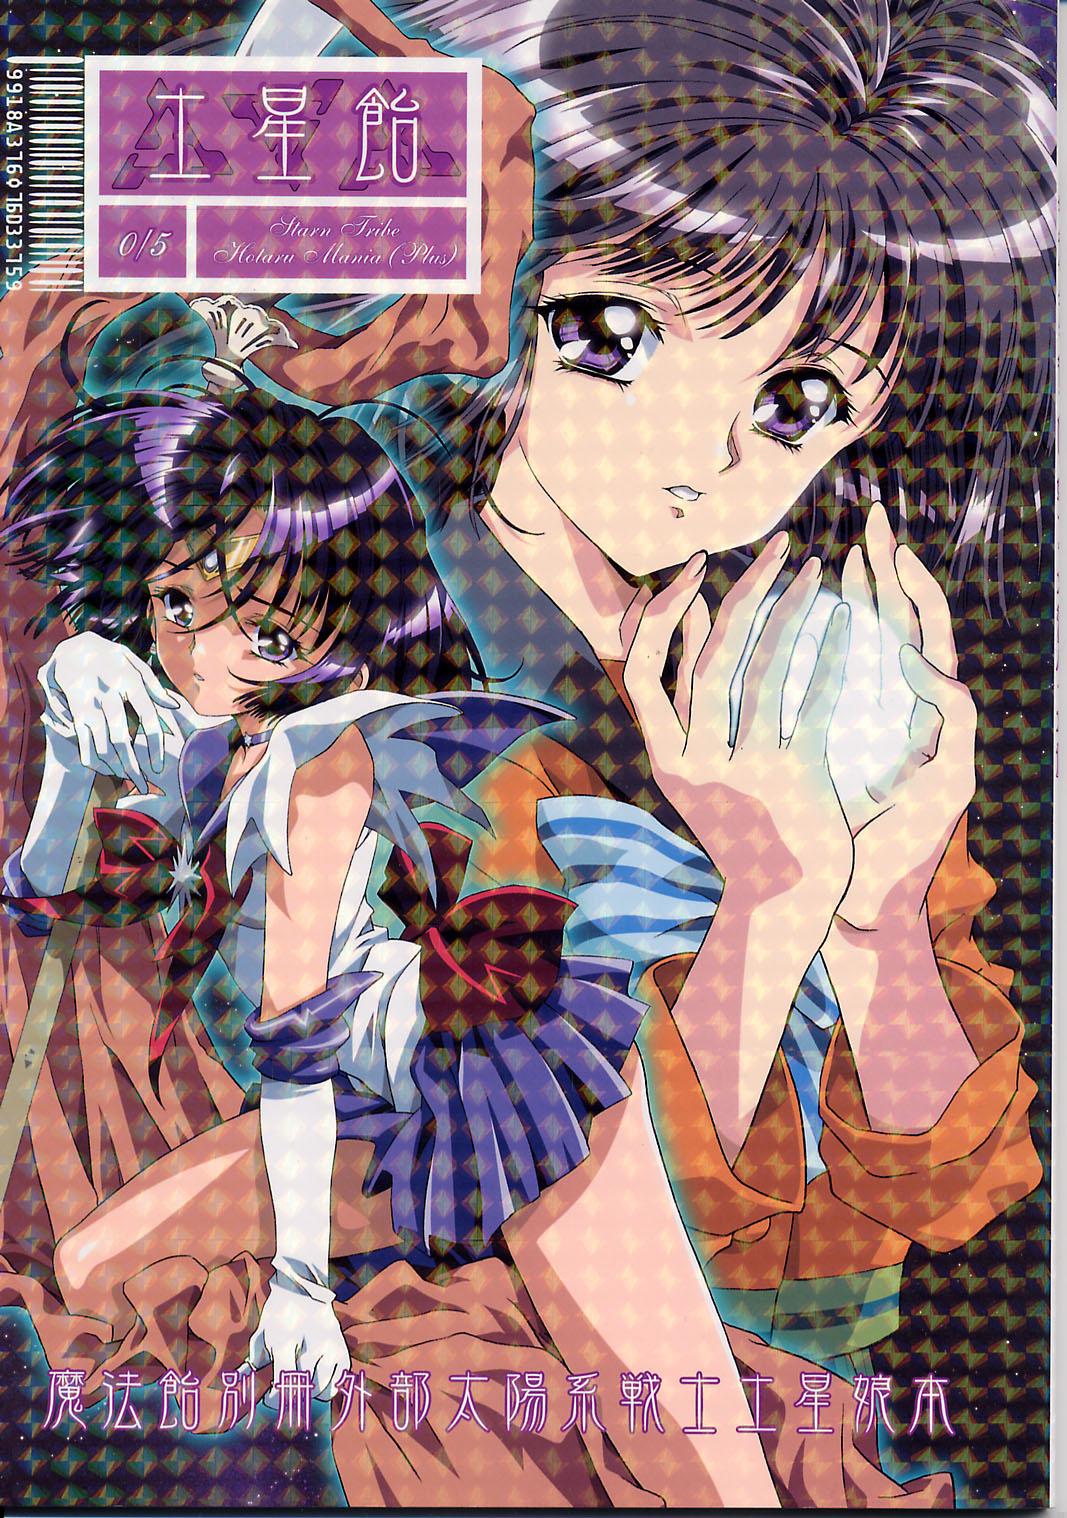 Oral Sex Dosei Ame - Sailor moon Interracial - Picture 1